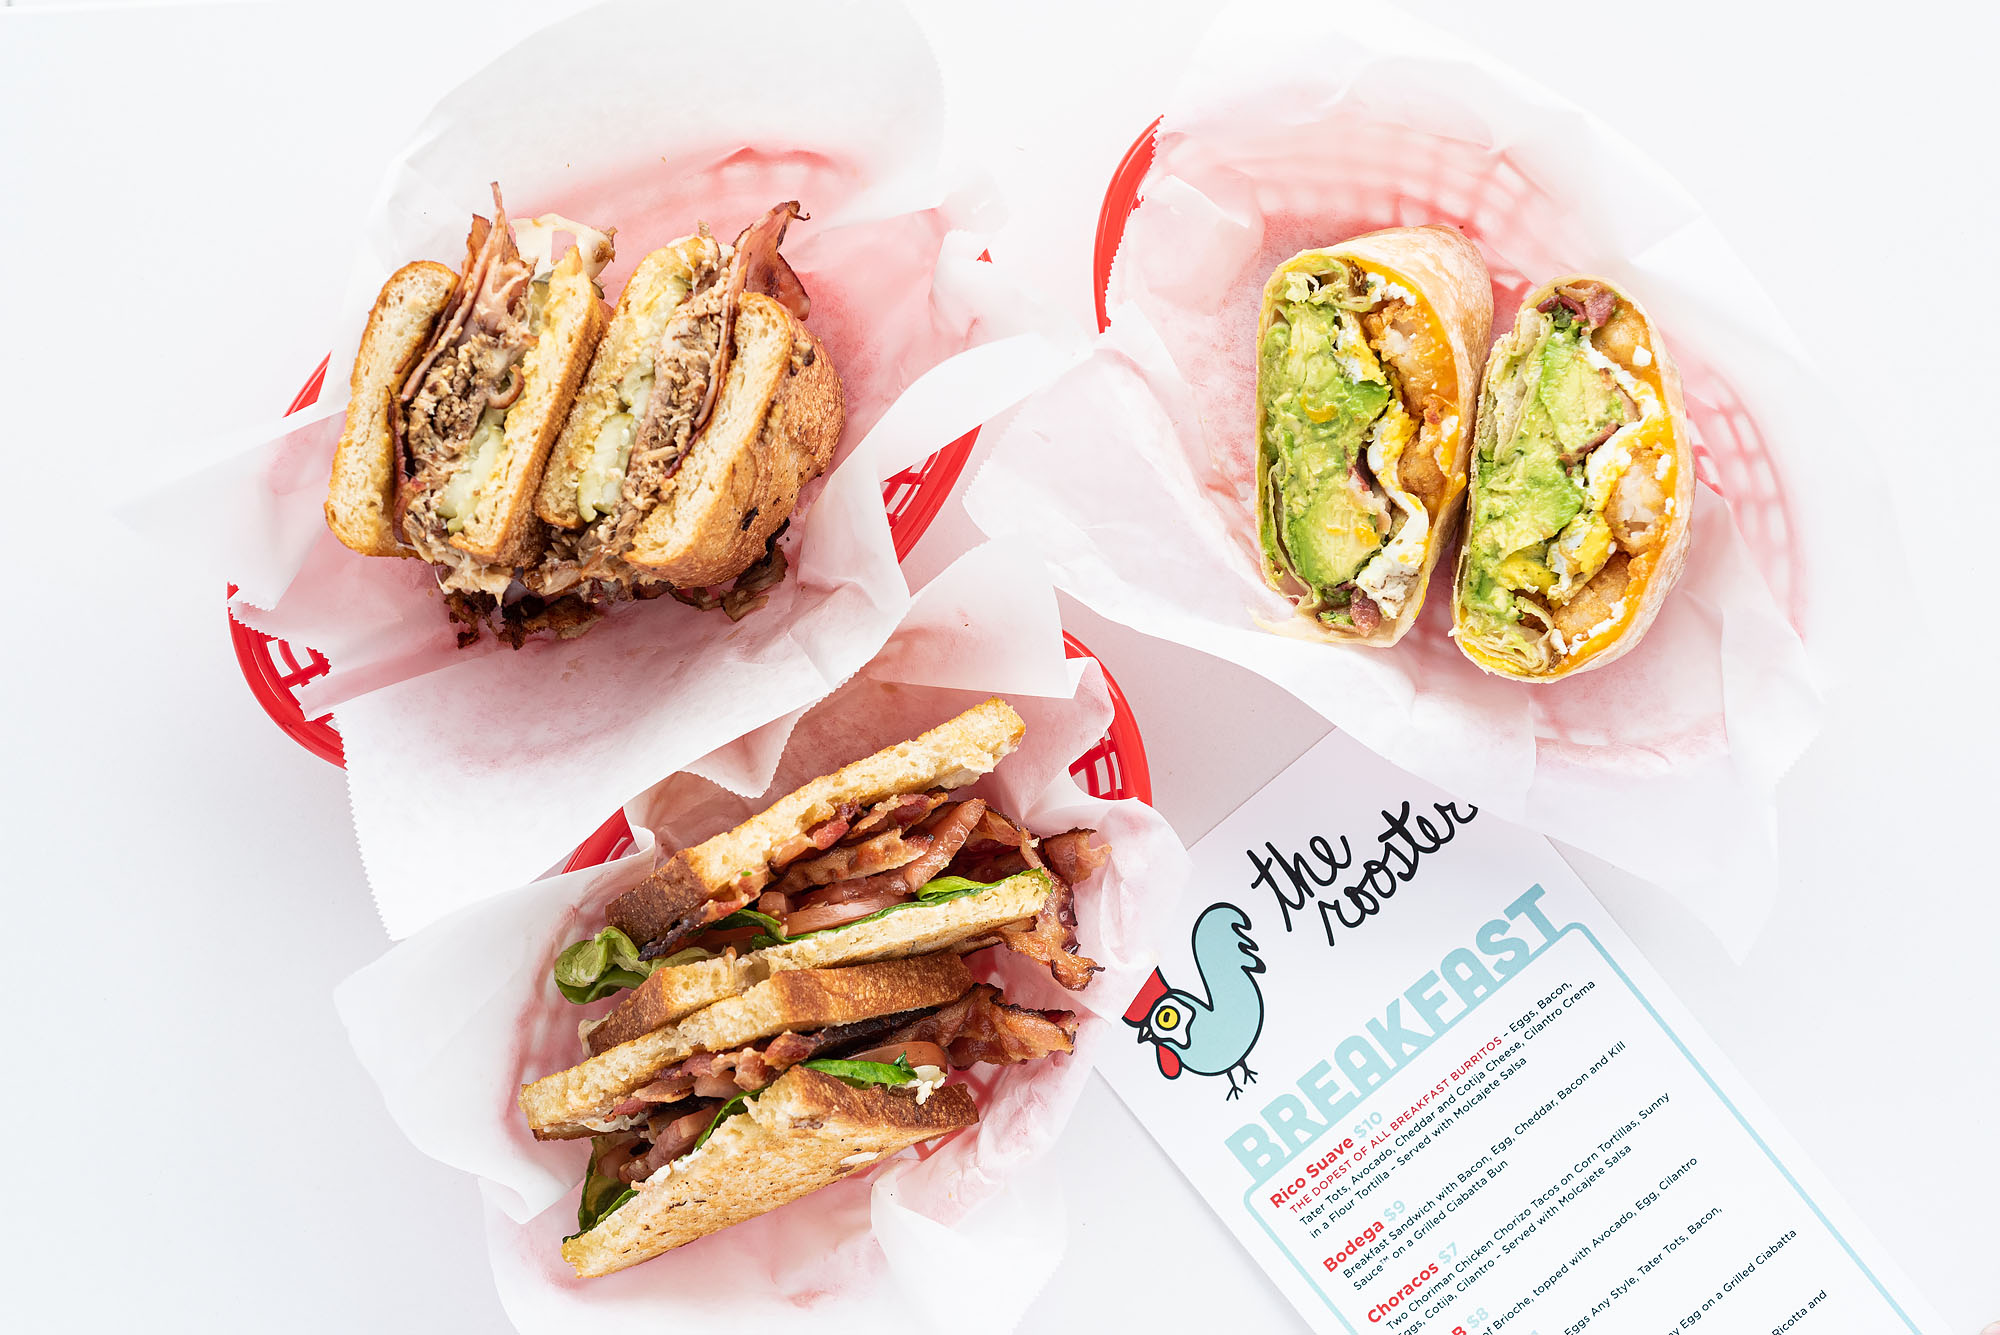 A trio of sandwiches on a bright white counter including a breakfast burrito.